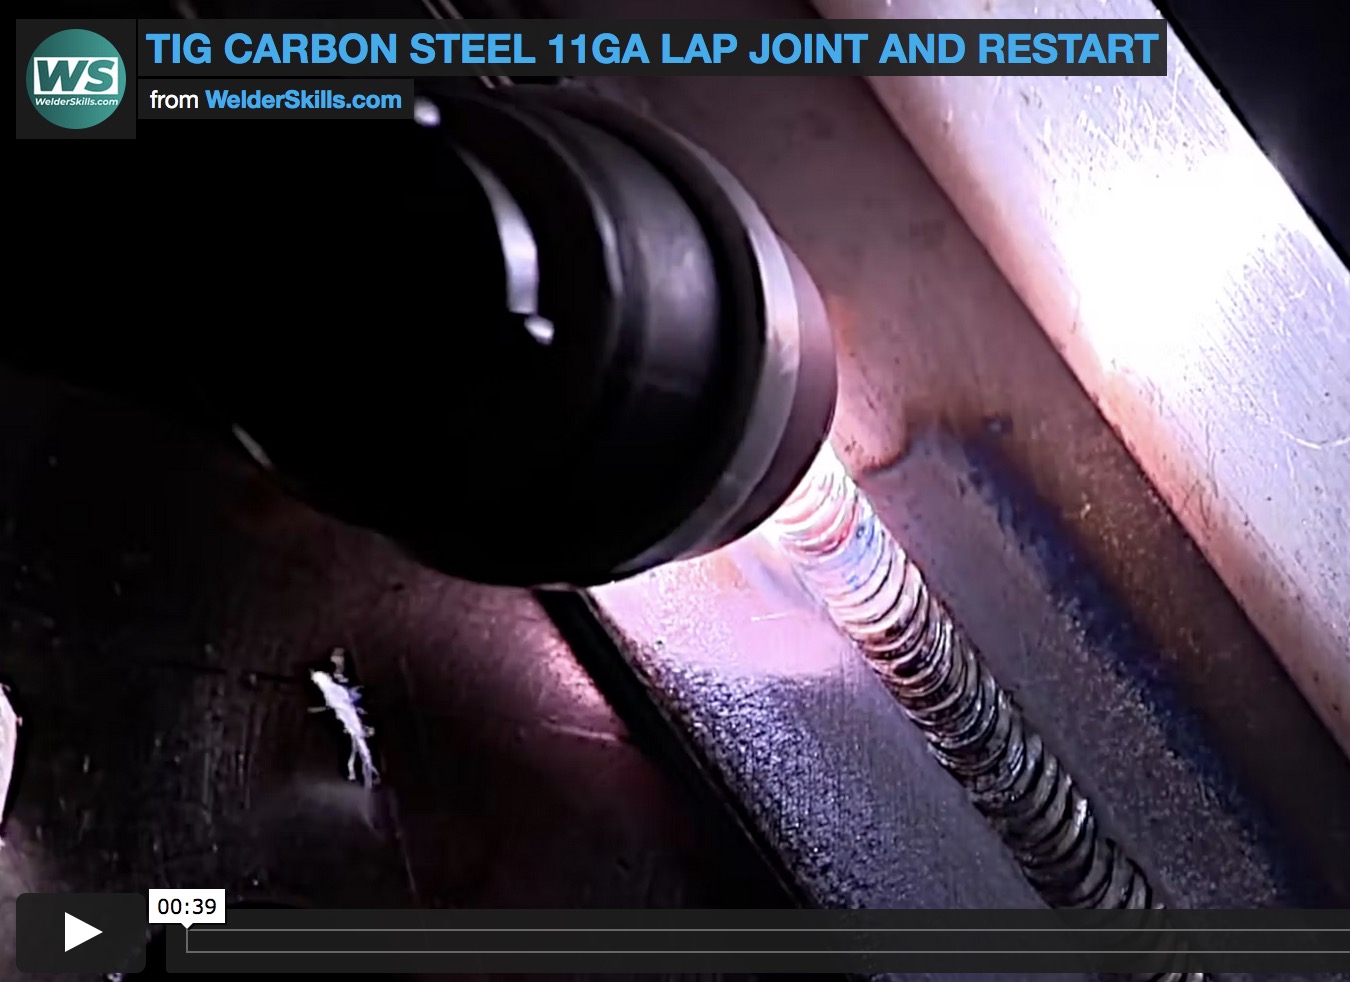 tig welding carbon steel